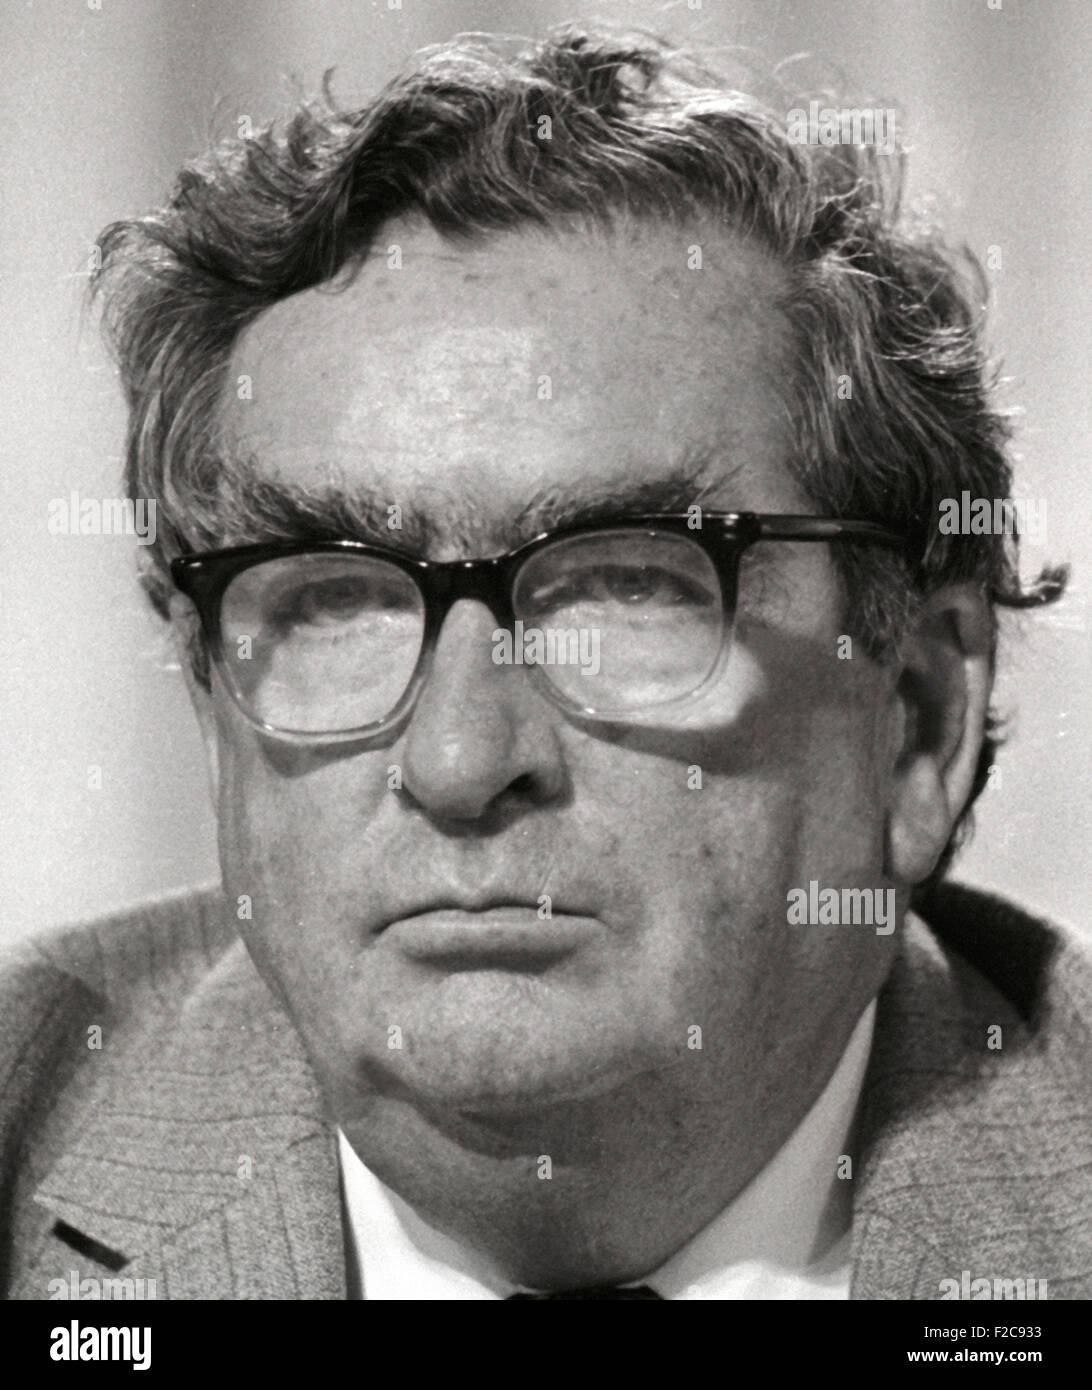 Denis Winston Healey Lord Healey britische Labour-Politiker 1984-Bild Stockfoto